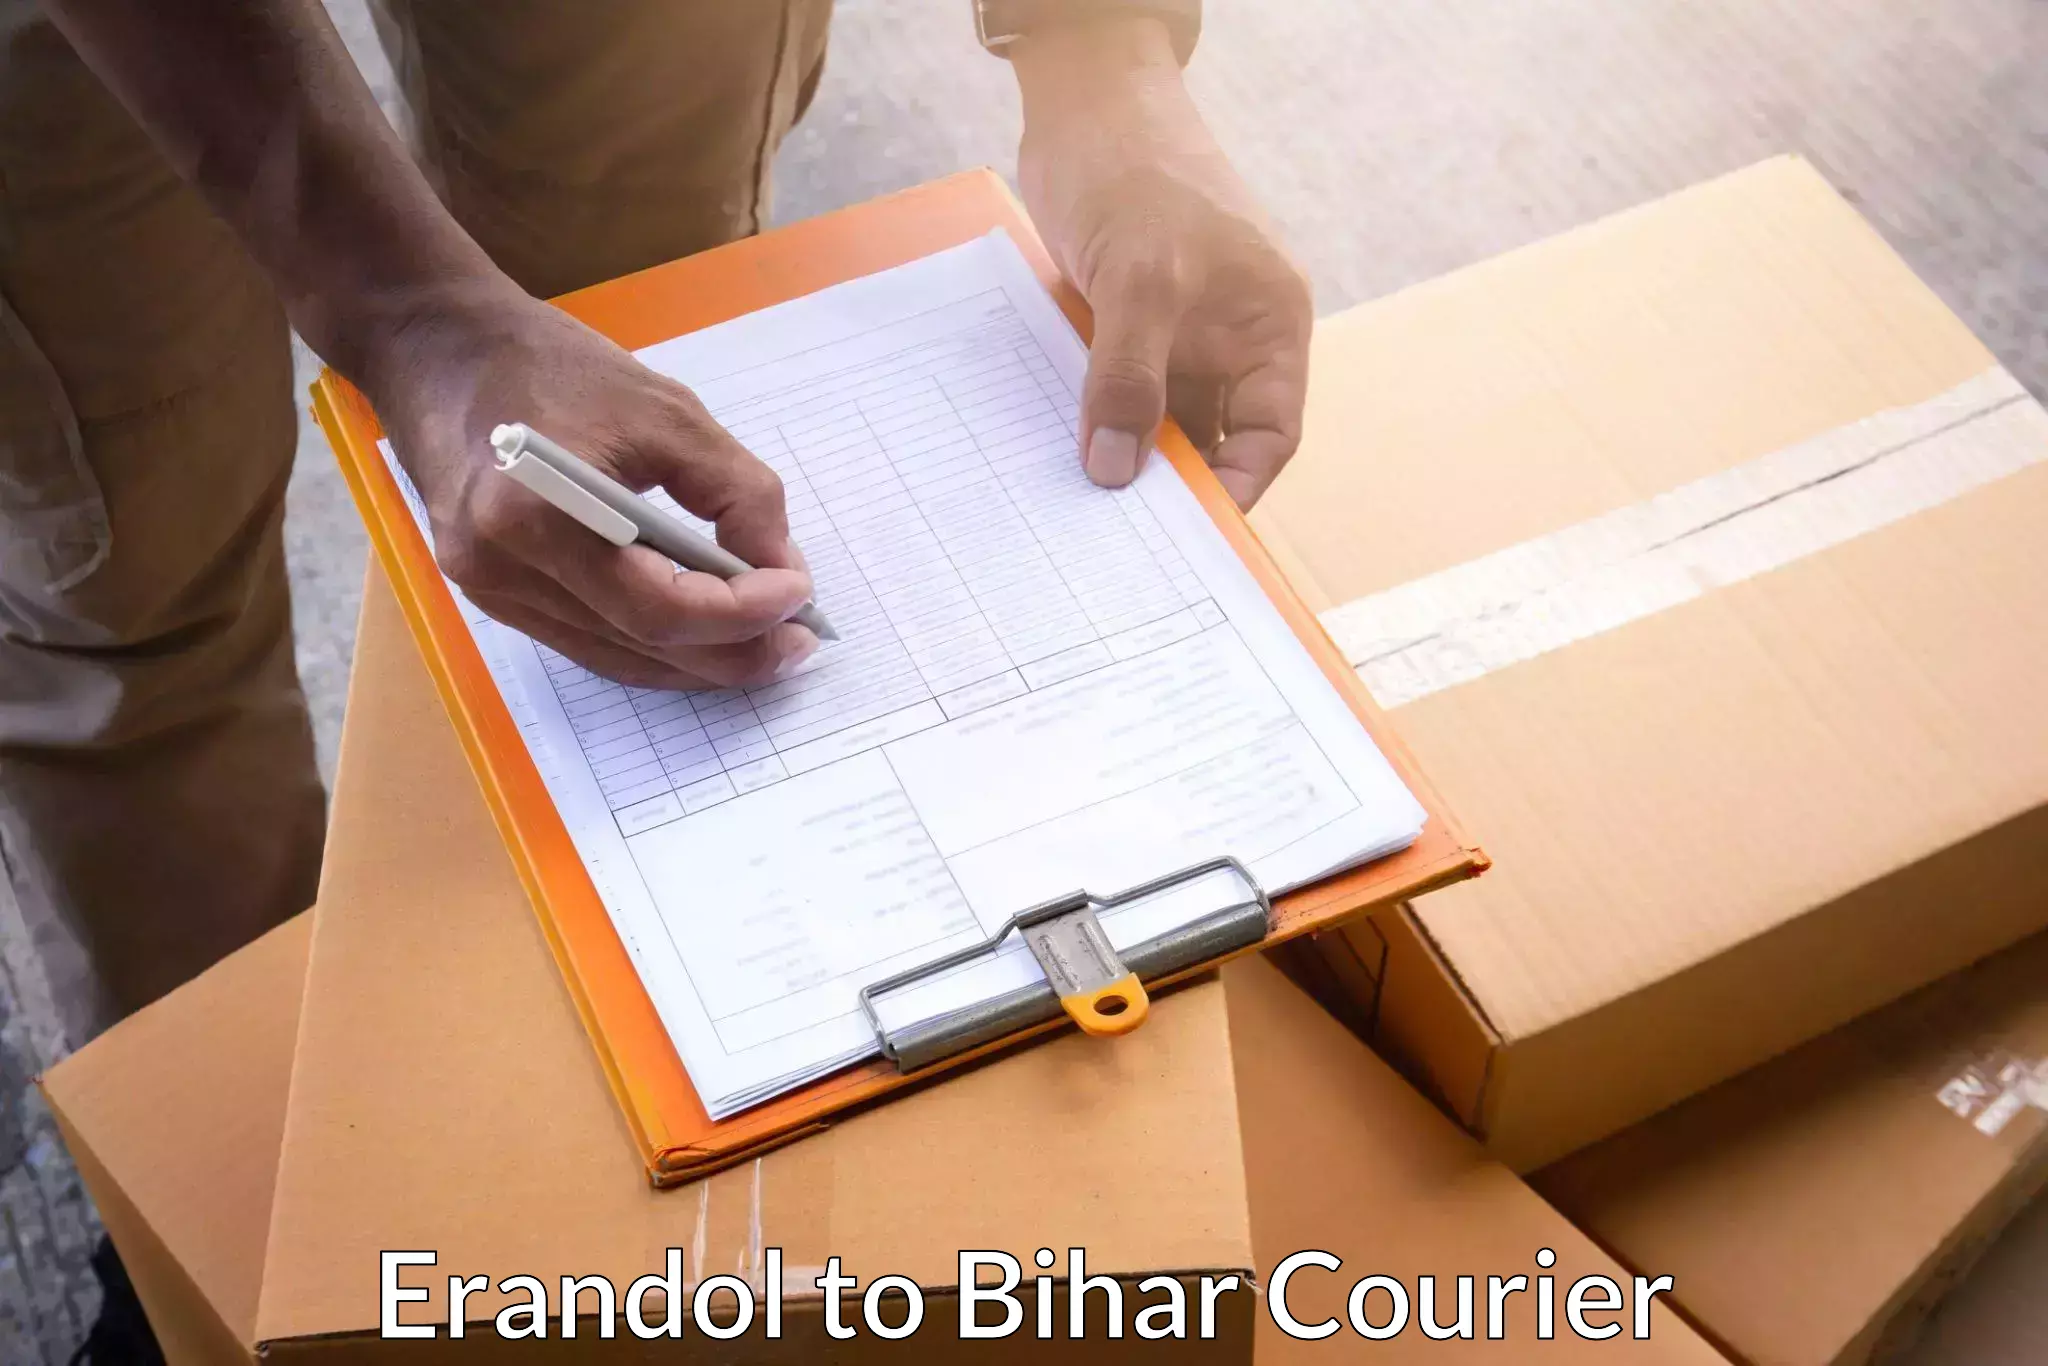 Wholesale parcel delivery in Erandol to Biraul